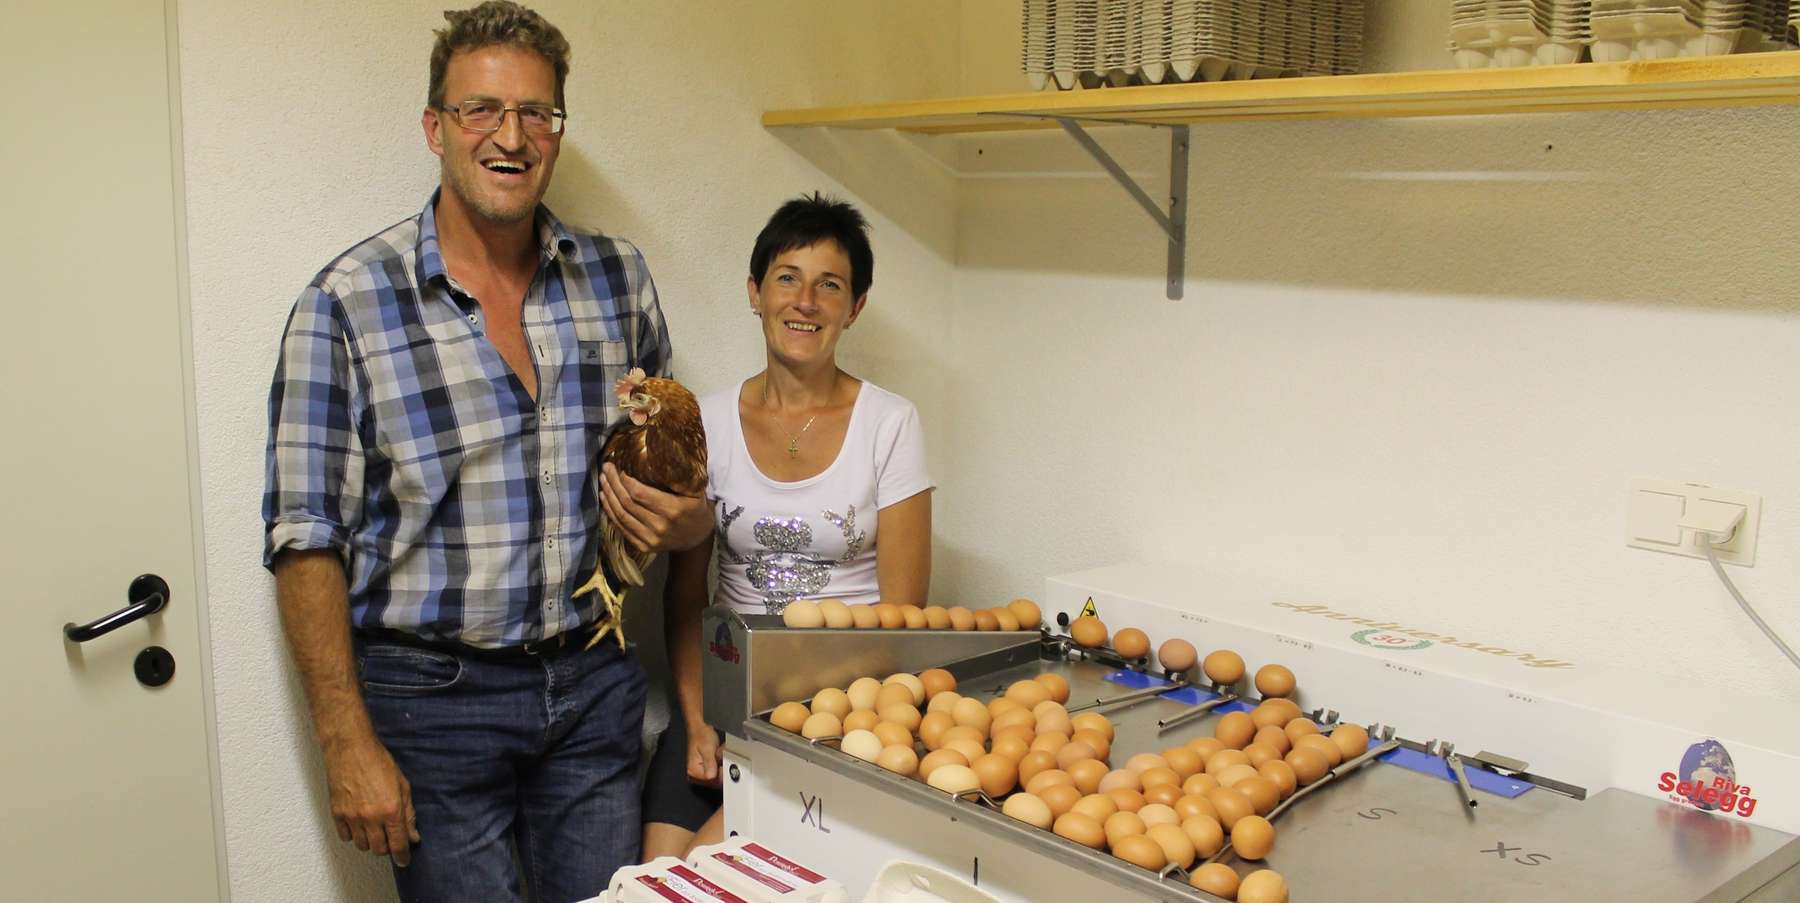 Theresia und Johann Schiestl an der Eiersortieranlage, hier werden täglich über 400 Eier sortiert und verpackt. © Johann Schiestl jun.